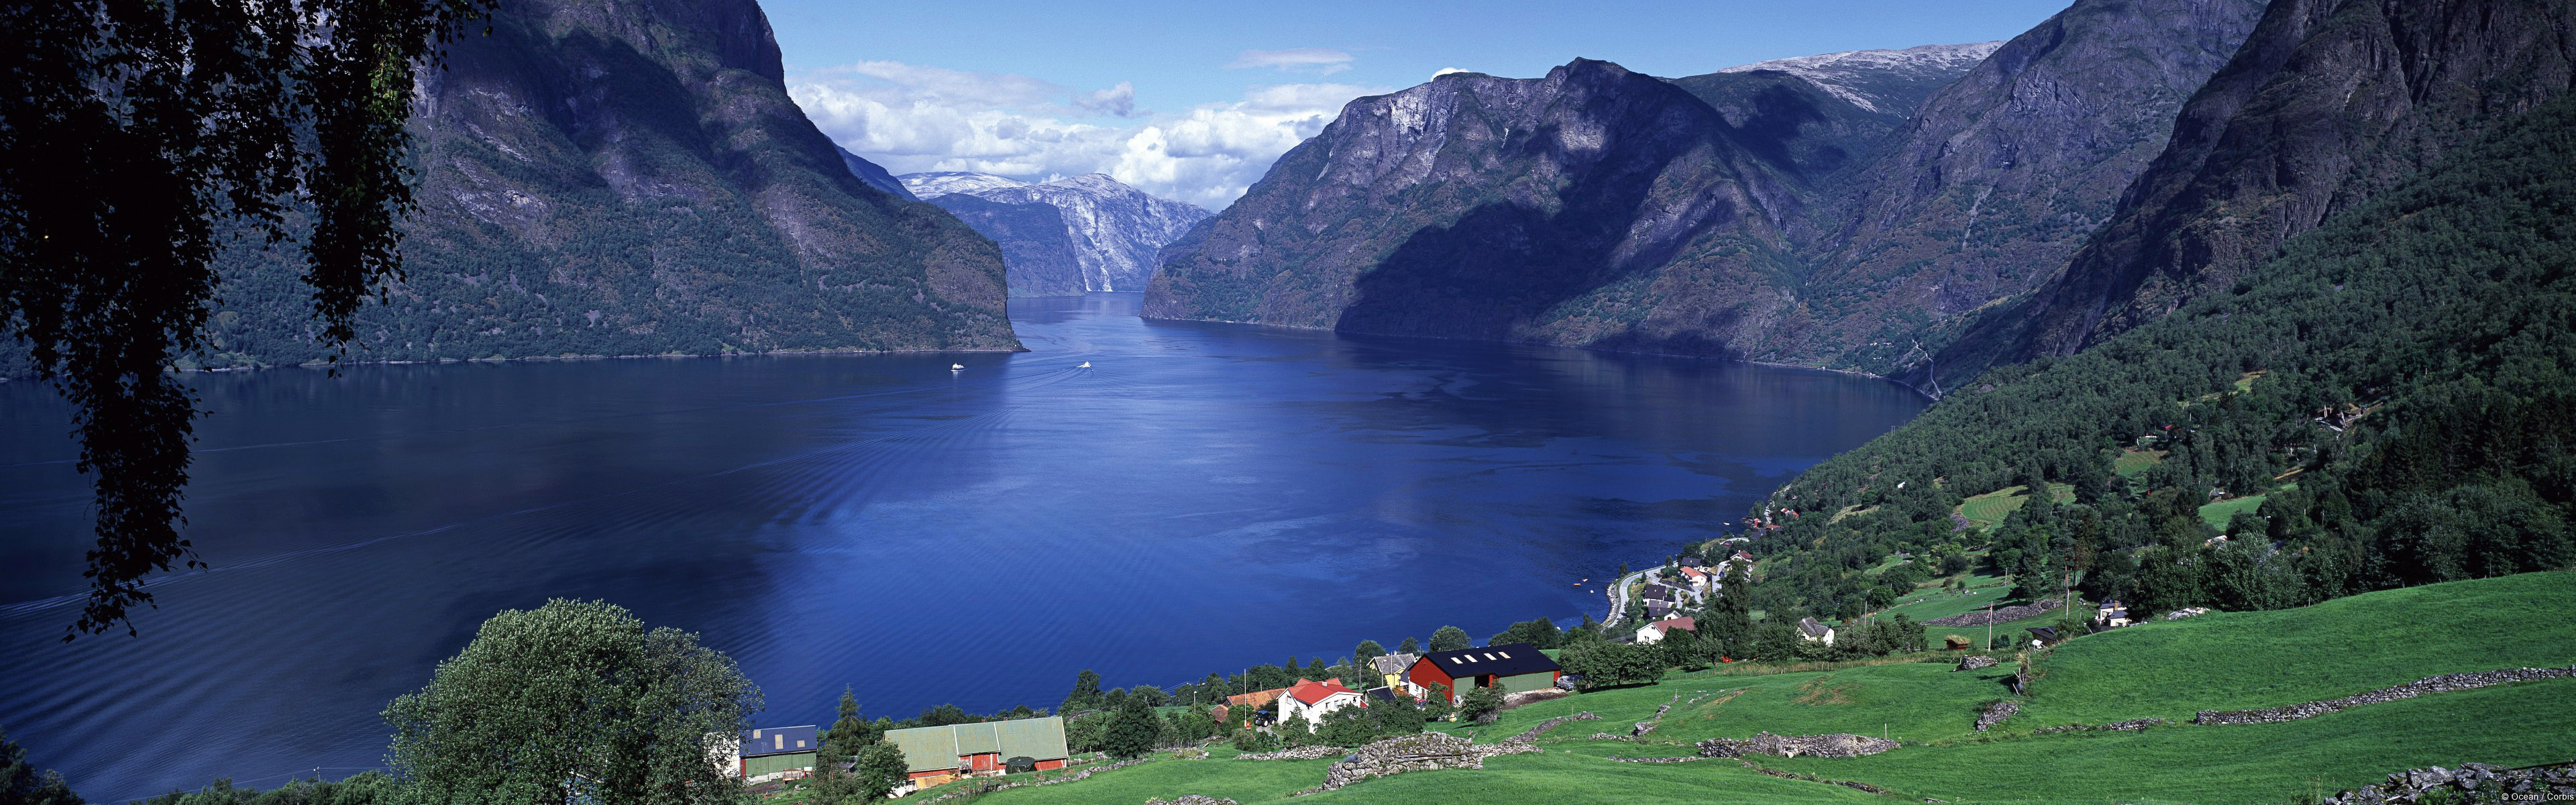 697260 скачать обои фотографии, пейзаж, аурландс фьорд, фьорд, норвегия - заставки и картинки бесплатно